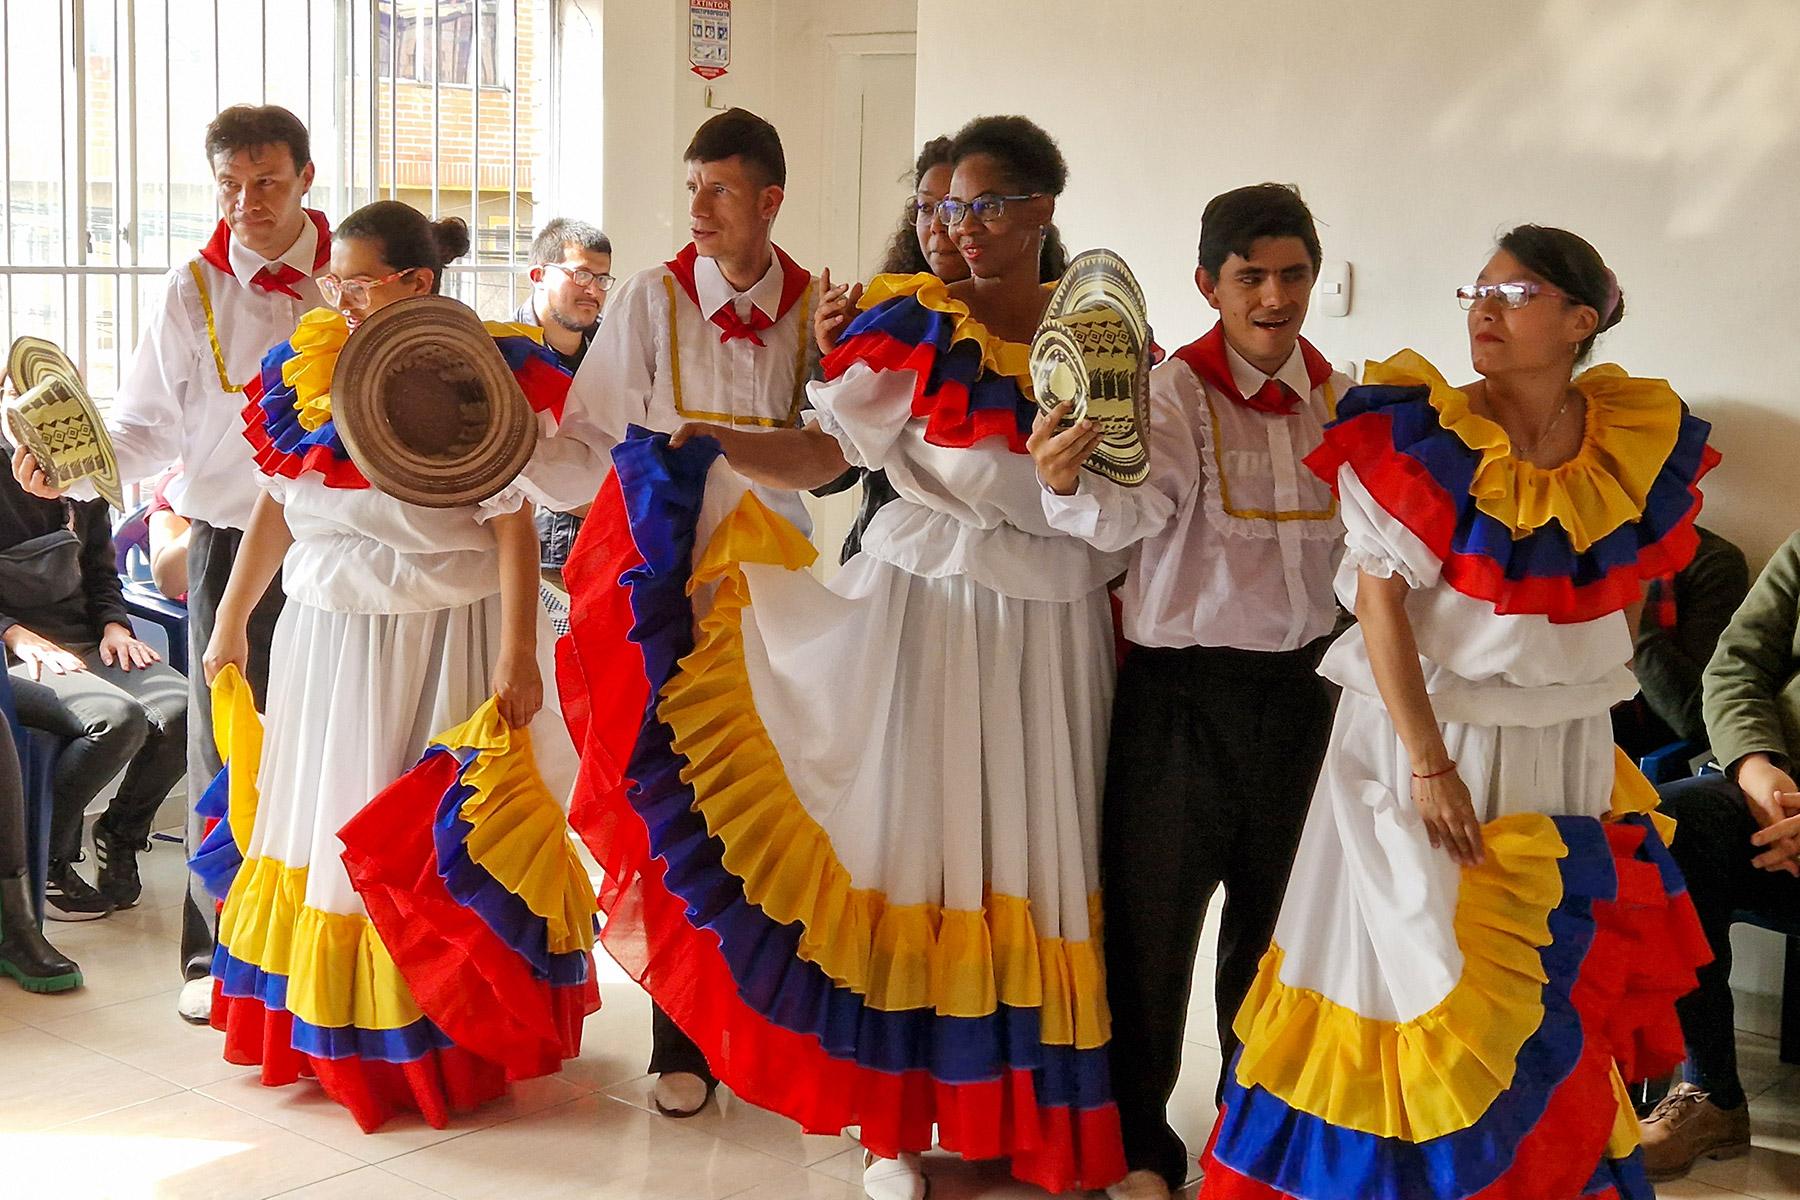 En el Centro de Formación Integral La Vid Verdadera un grupo de personas con discapacidad auditiva o mental presenta con orgullo una danza tradicional colombiana a las personas visitantes de la Preasamblea de la FLM. Foto: FLM/A. Weyermüller